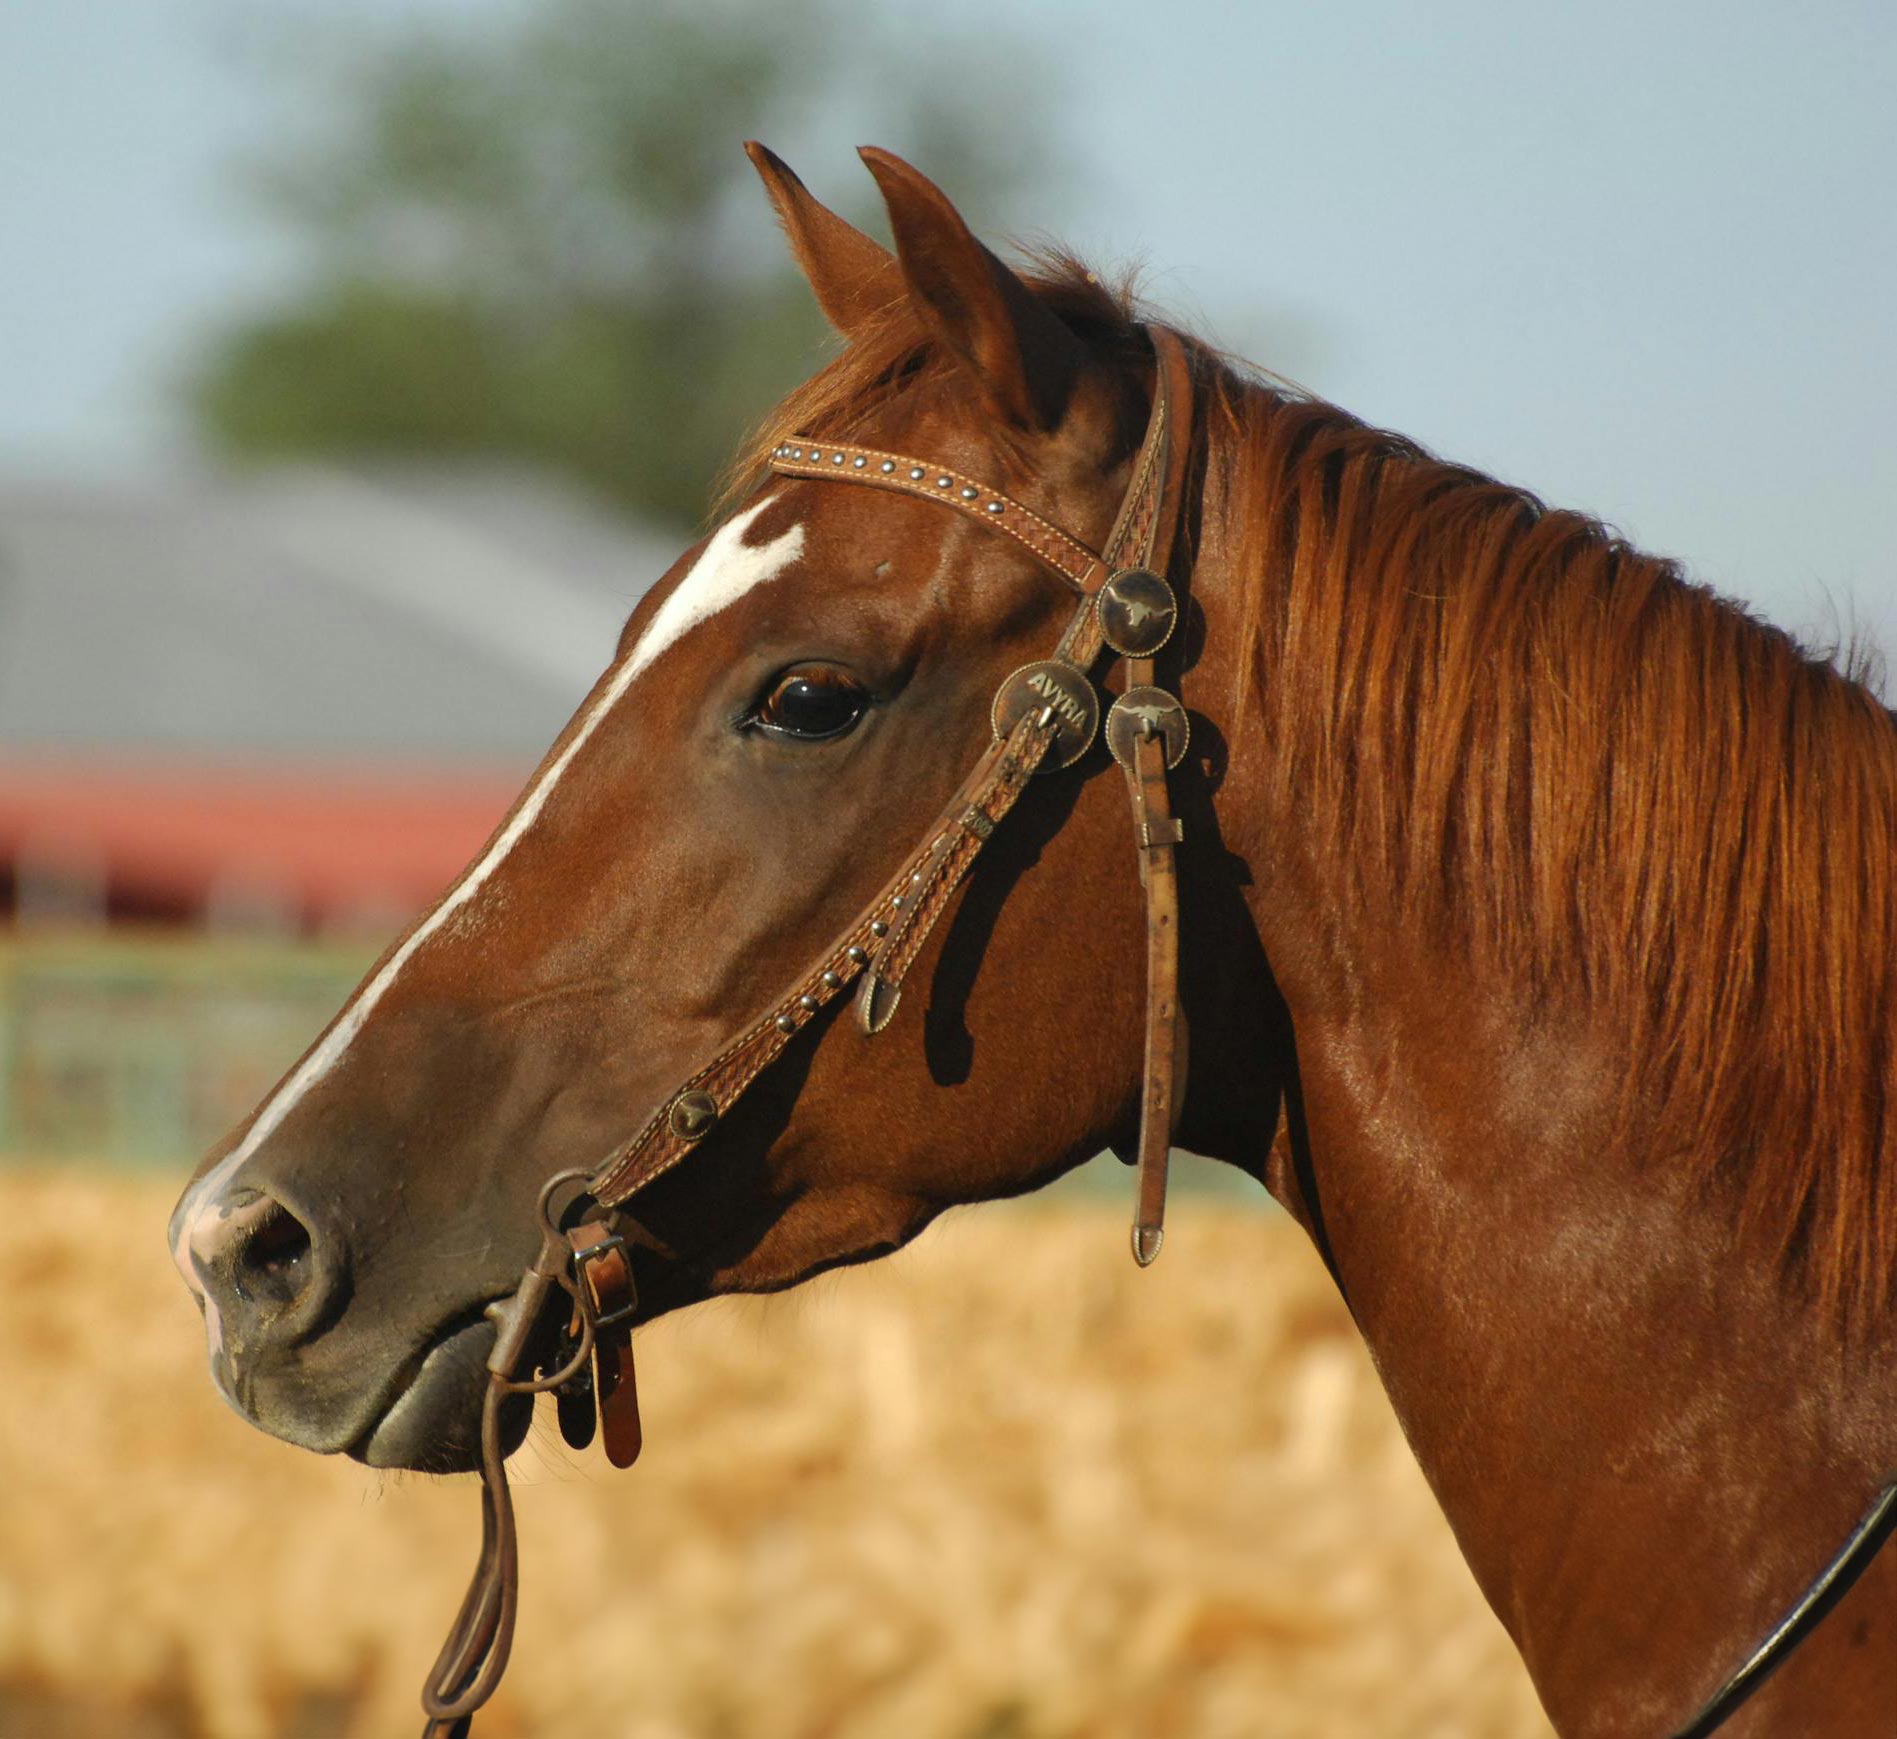 Horse portrait photography